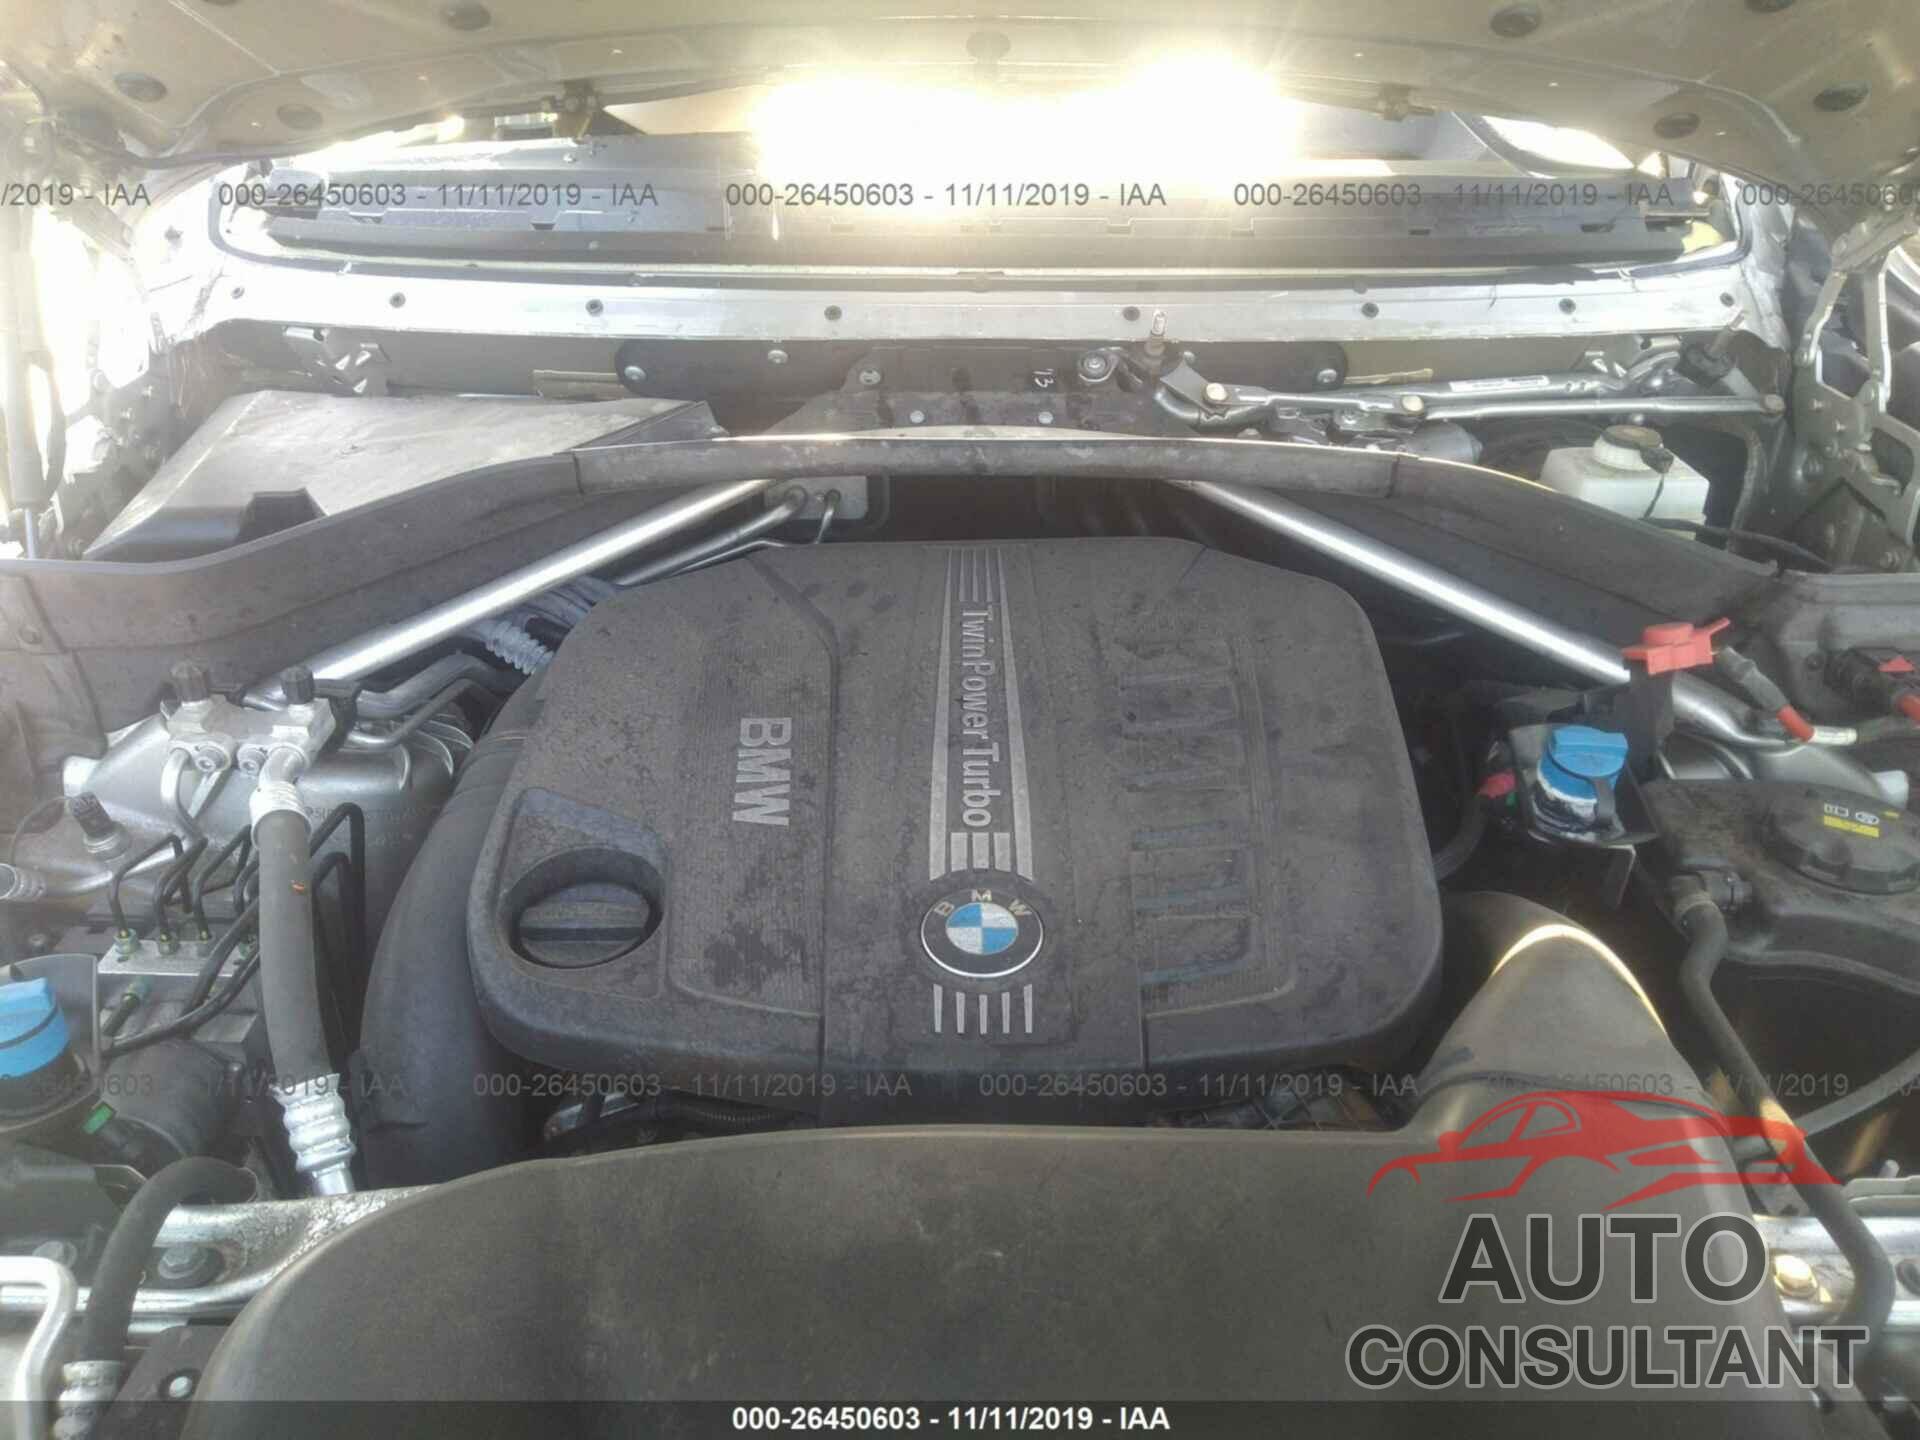 BMW X5 2014 - 5UXKS4C57E0J96557